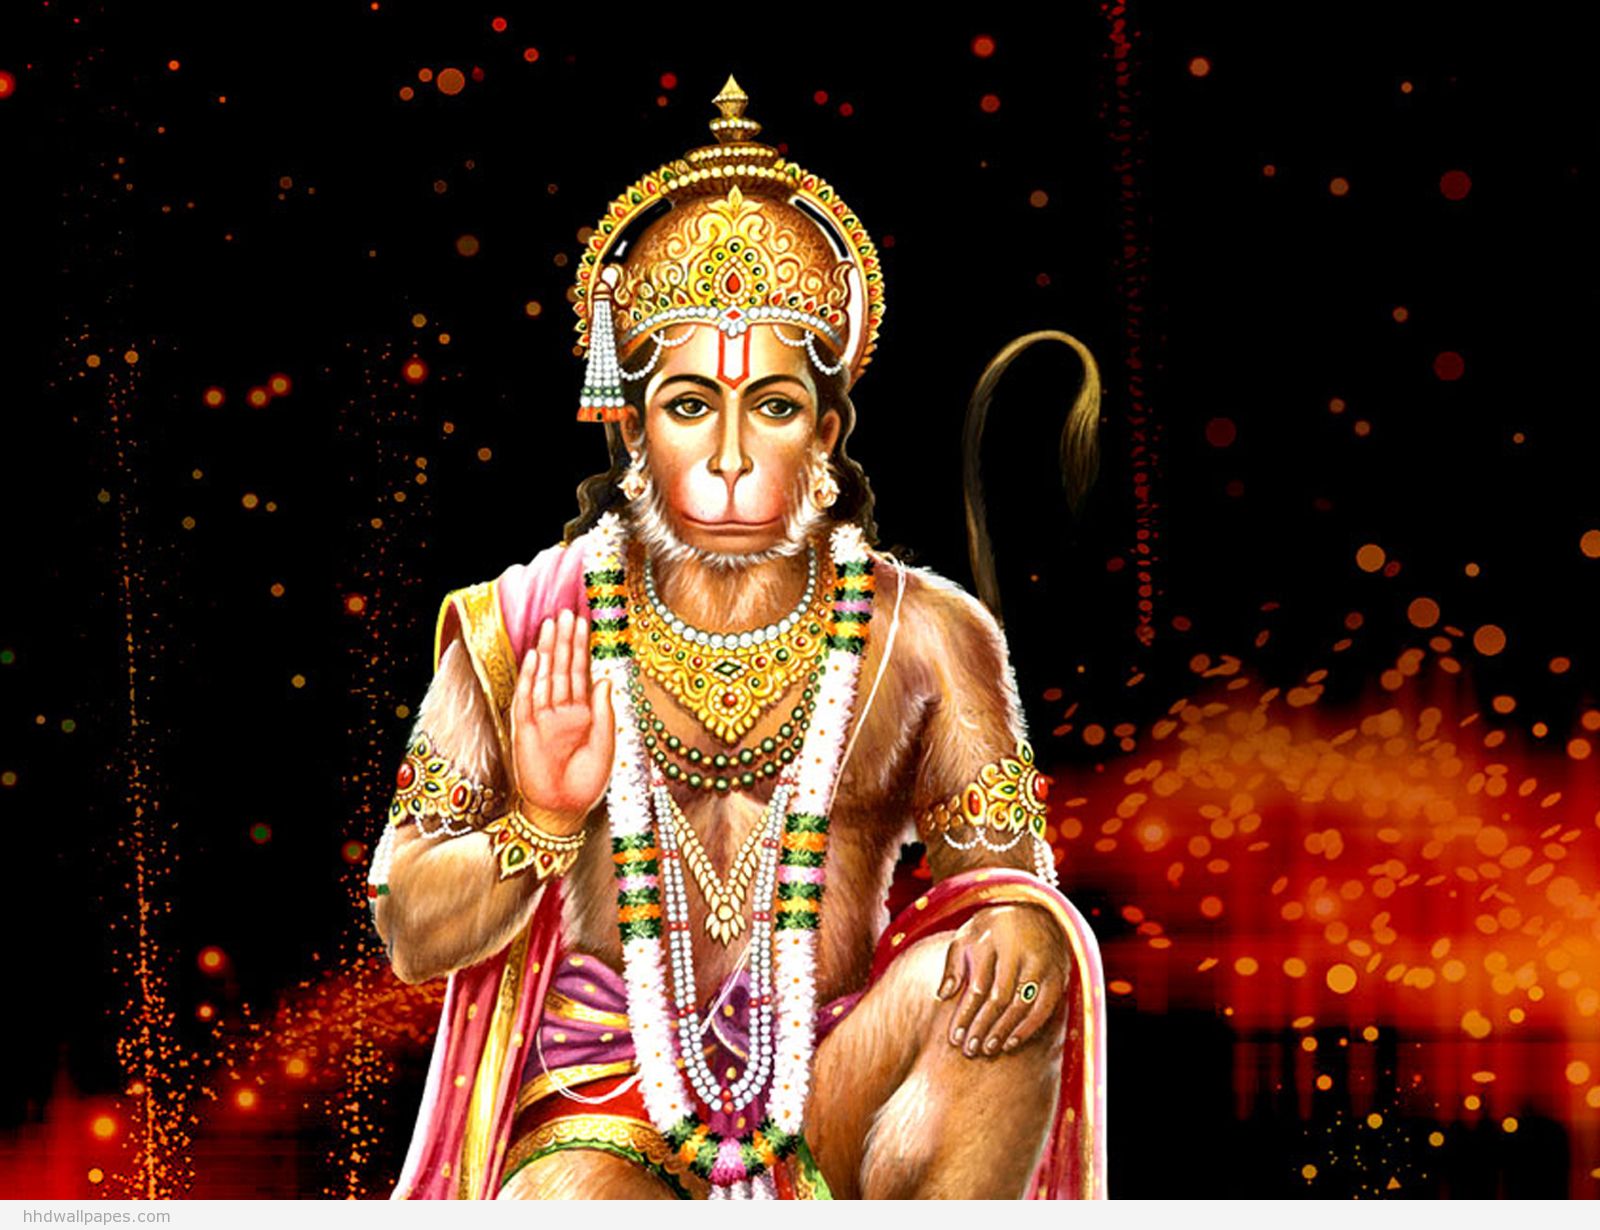 12 Hanuman WallpapersBest Wallpapers HD Backgrounds Wallpapers